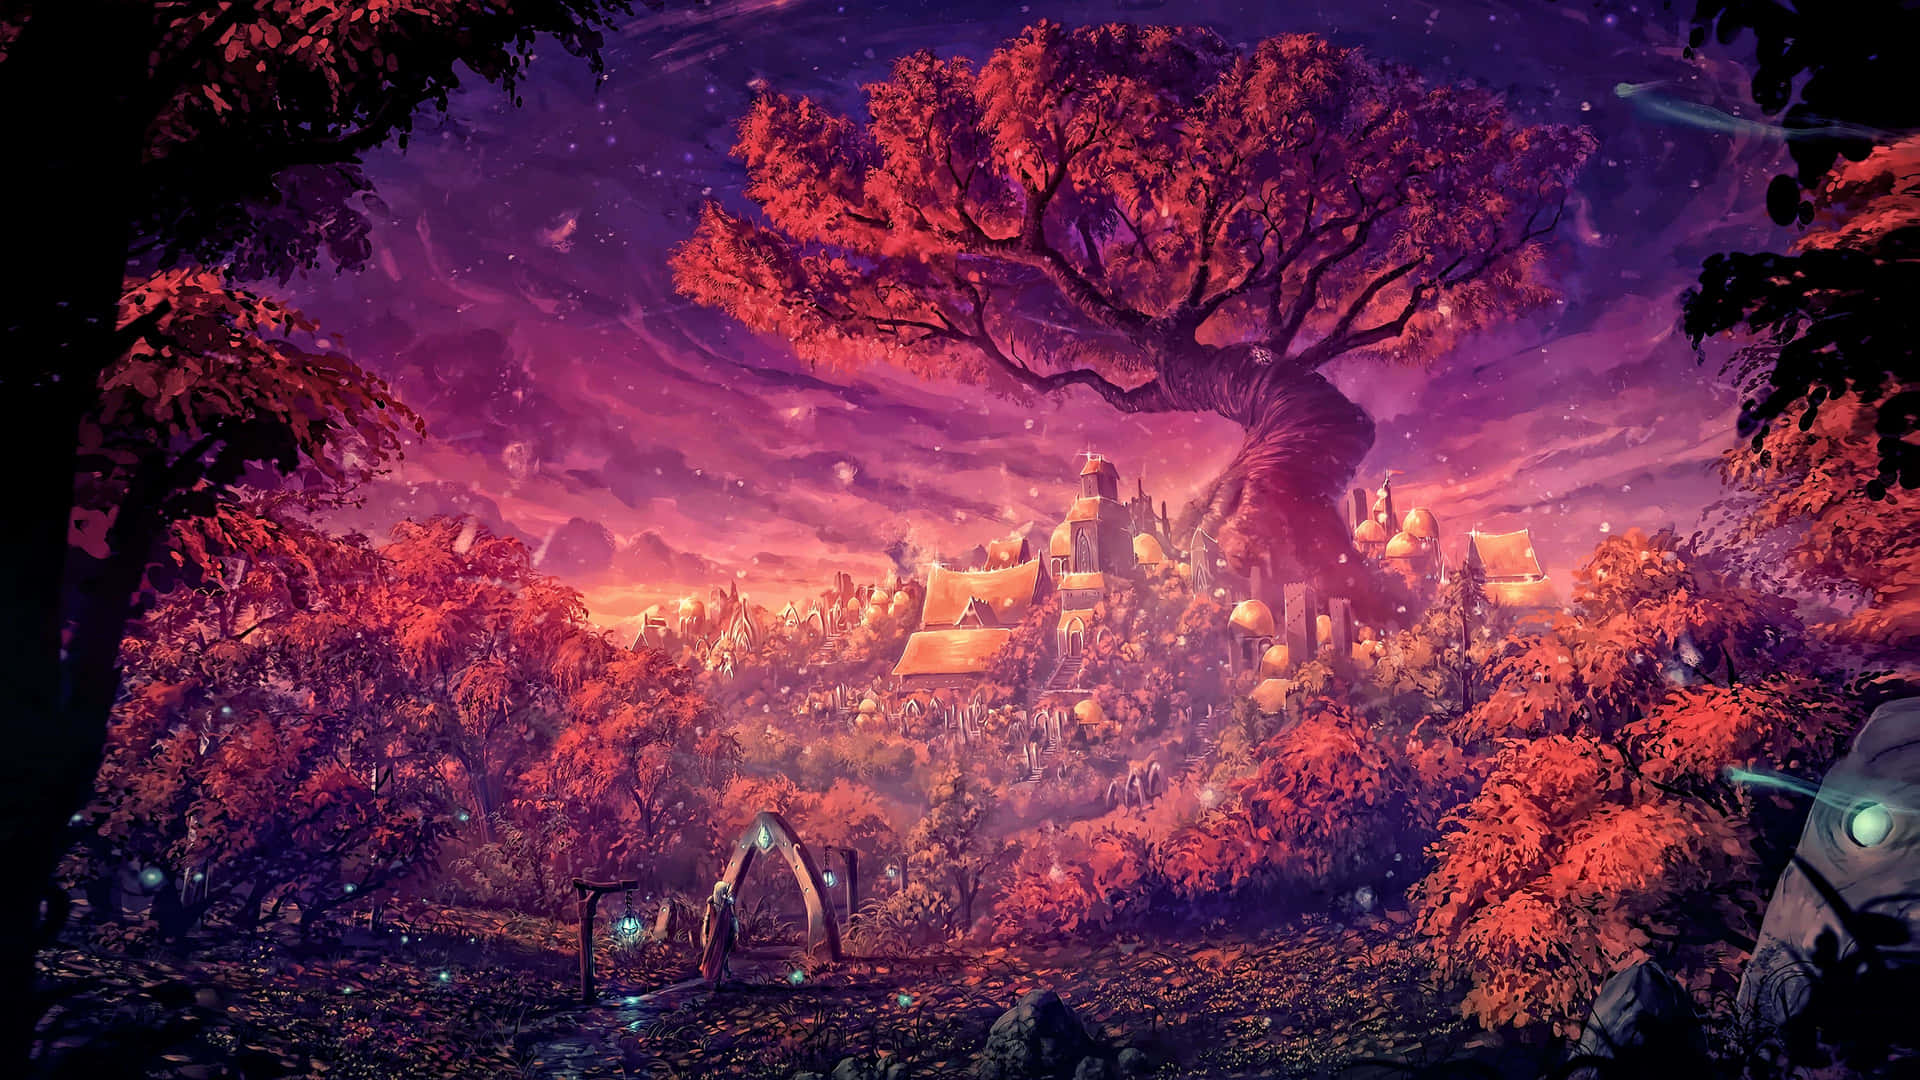 Træ af liv i fantasi skov Wallpaper